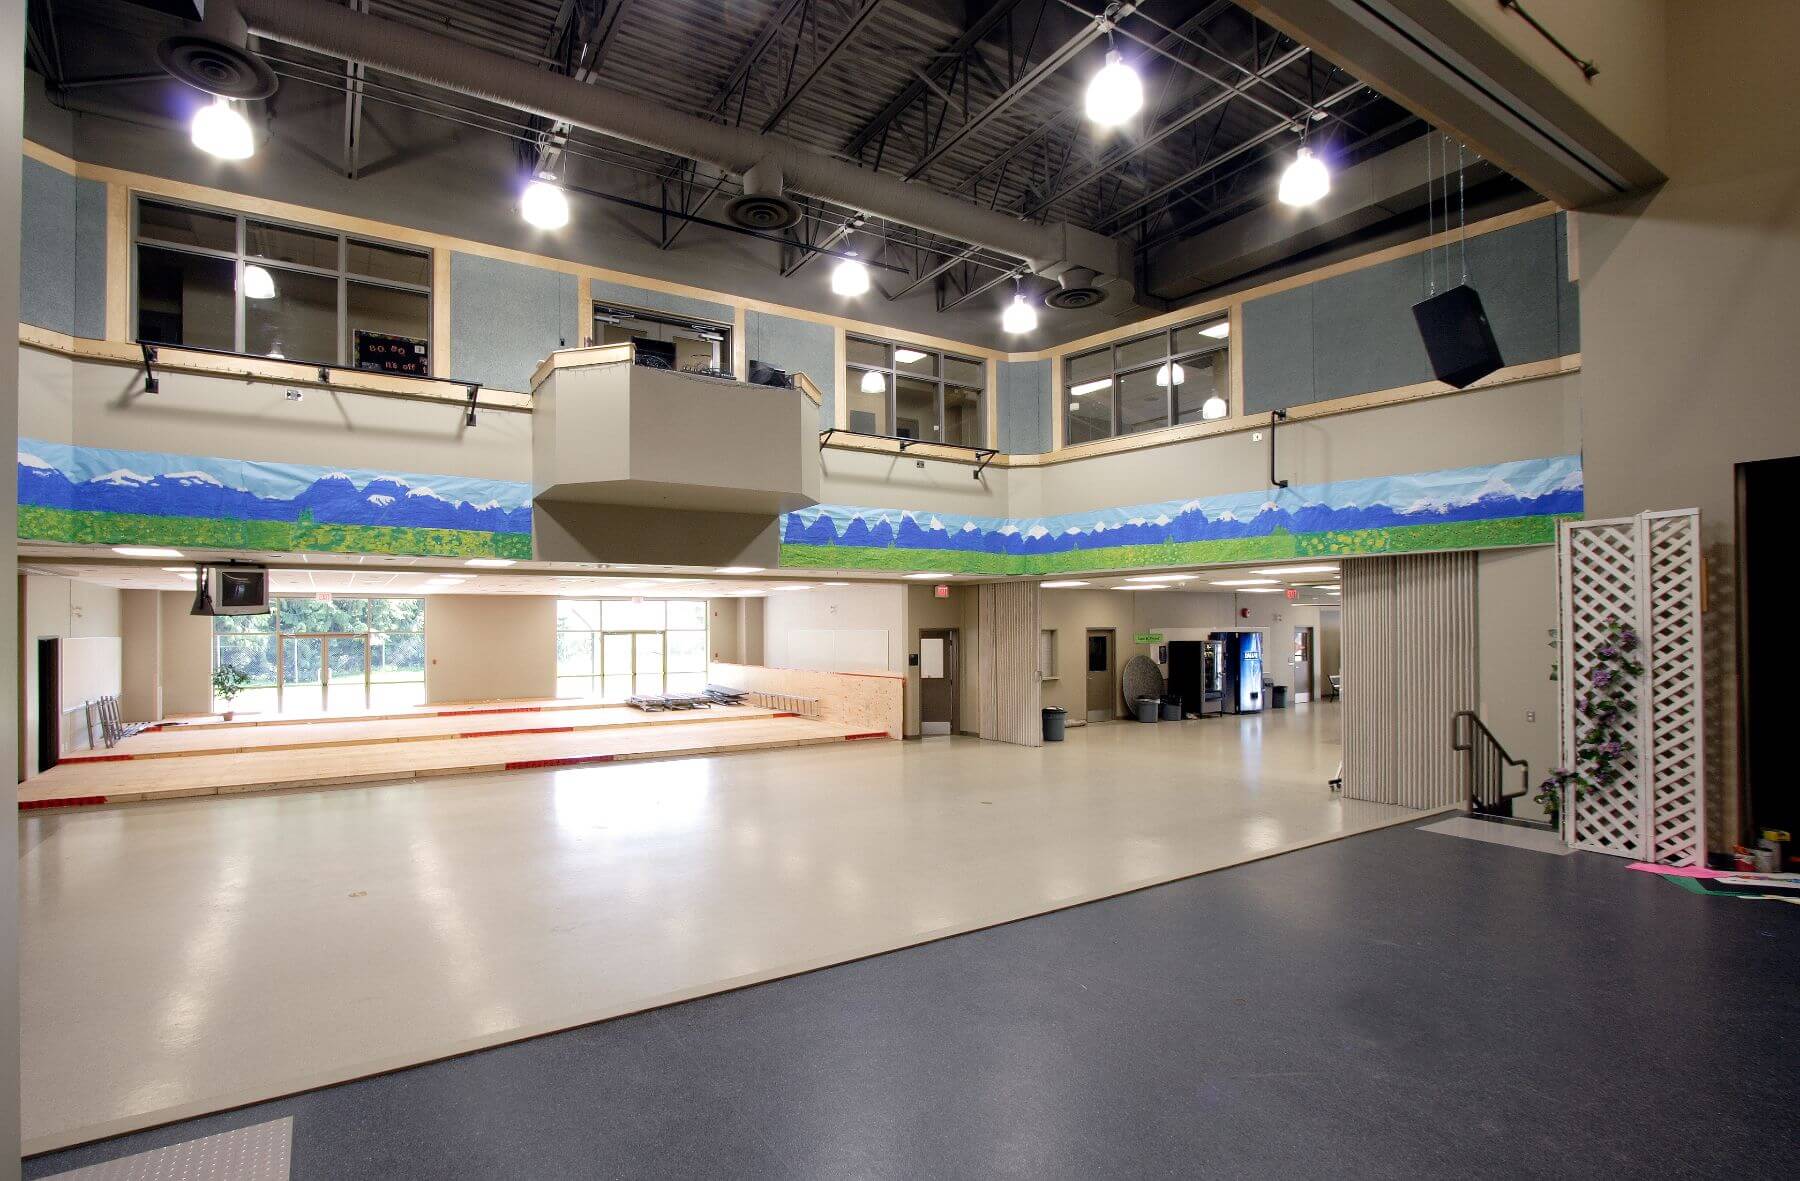 M.E.I. School – Interior View 2